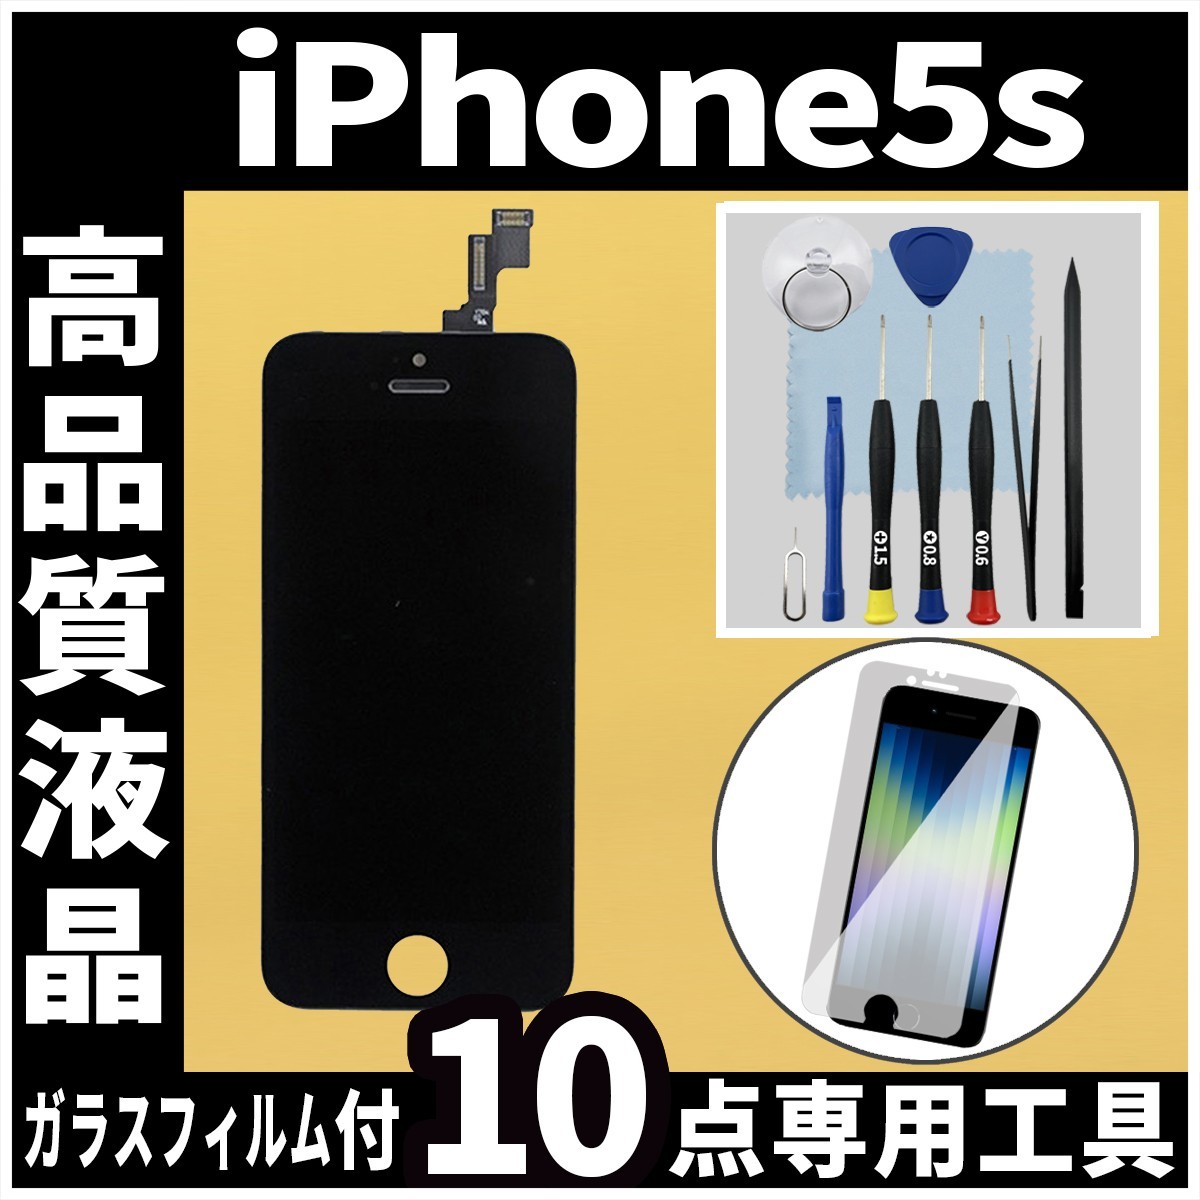 高品質液晶 iPhone5s フロントパネル 黒 高品質AAA 互換品 LCD 業者 画面割れ 液晶 iphone 修理 ガラス割れ 交換 ディスプレイ_画像1